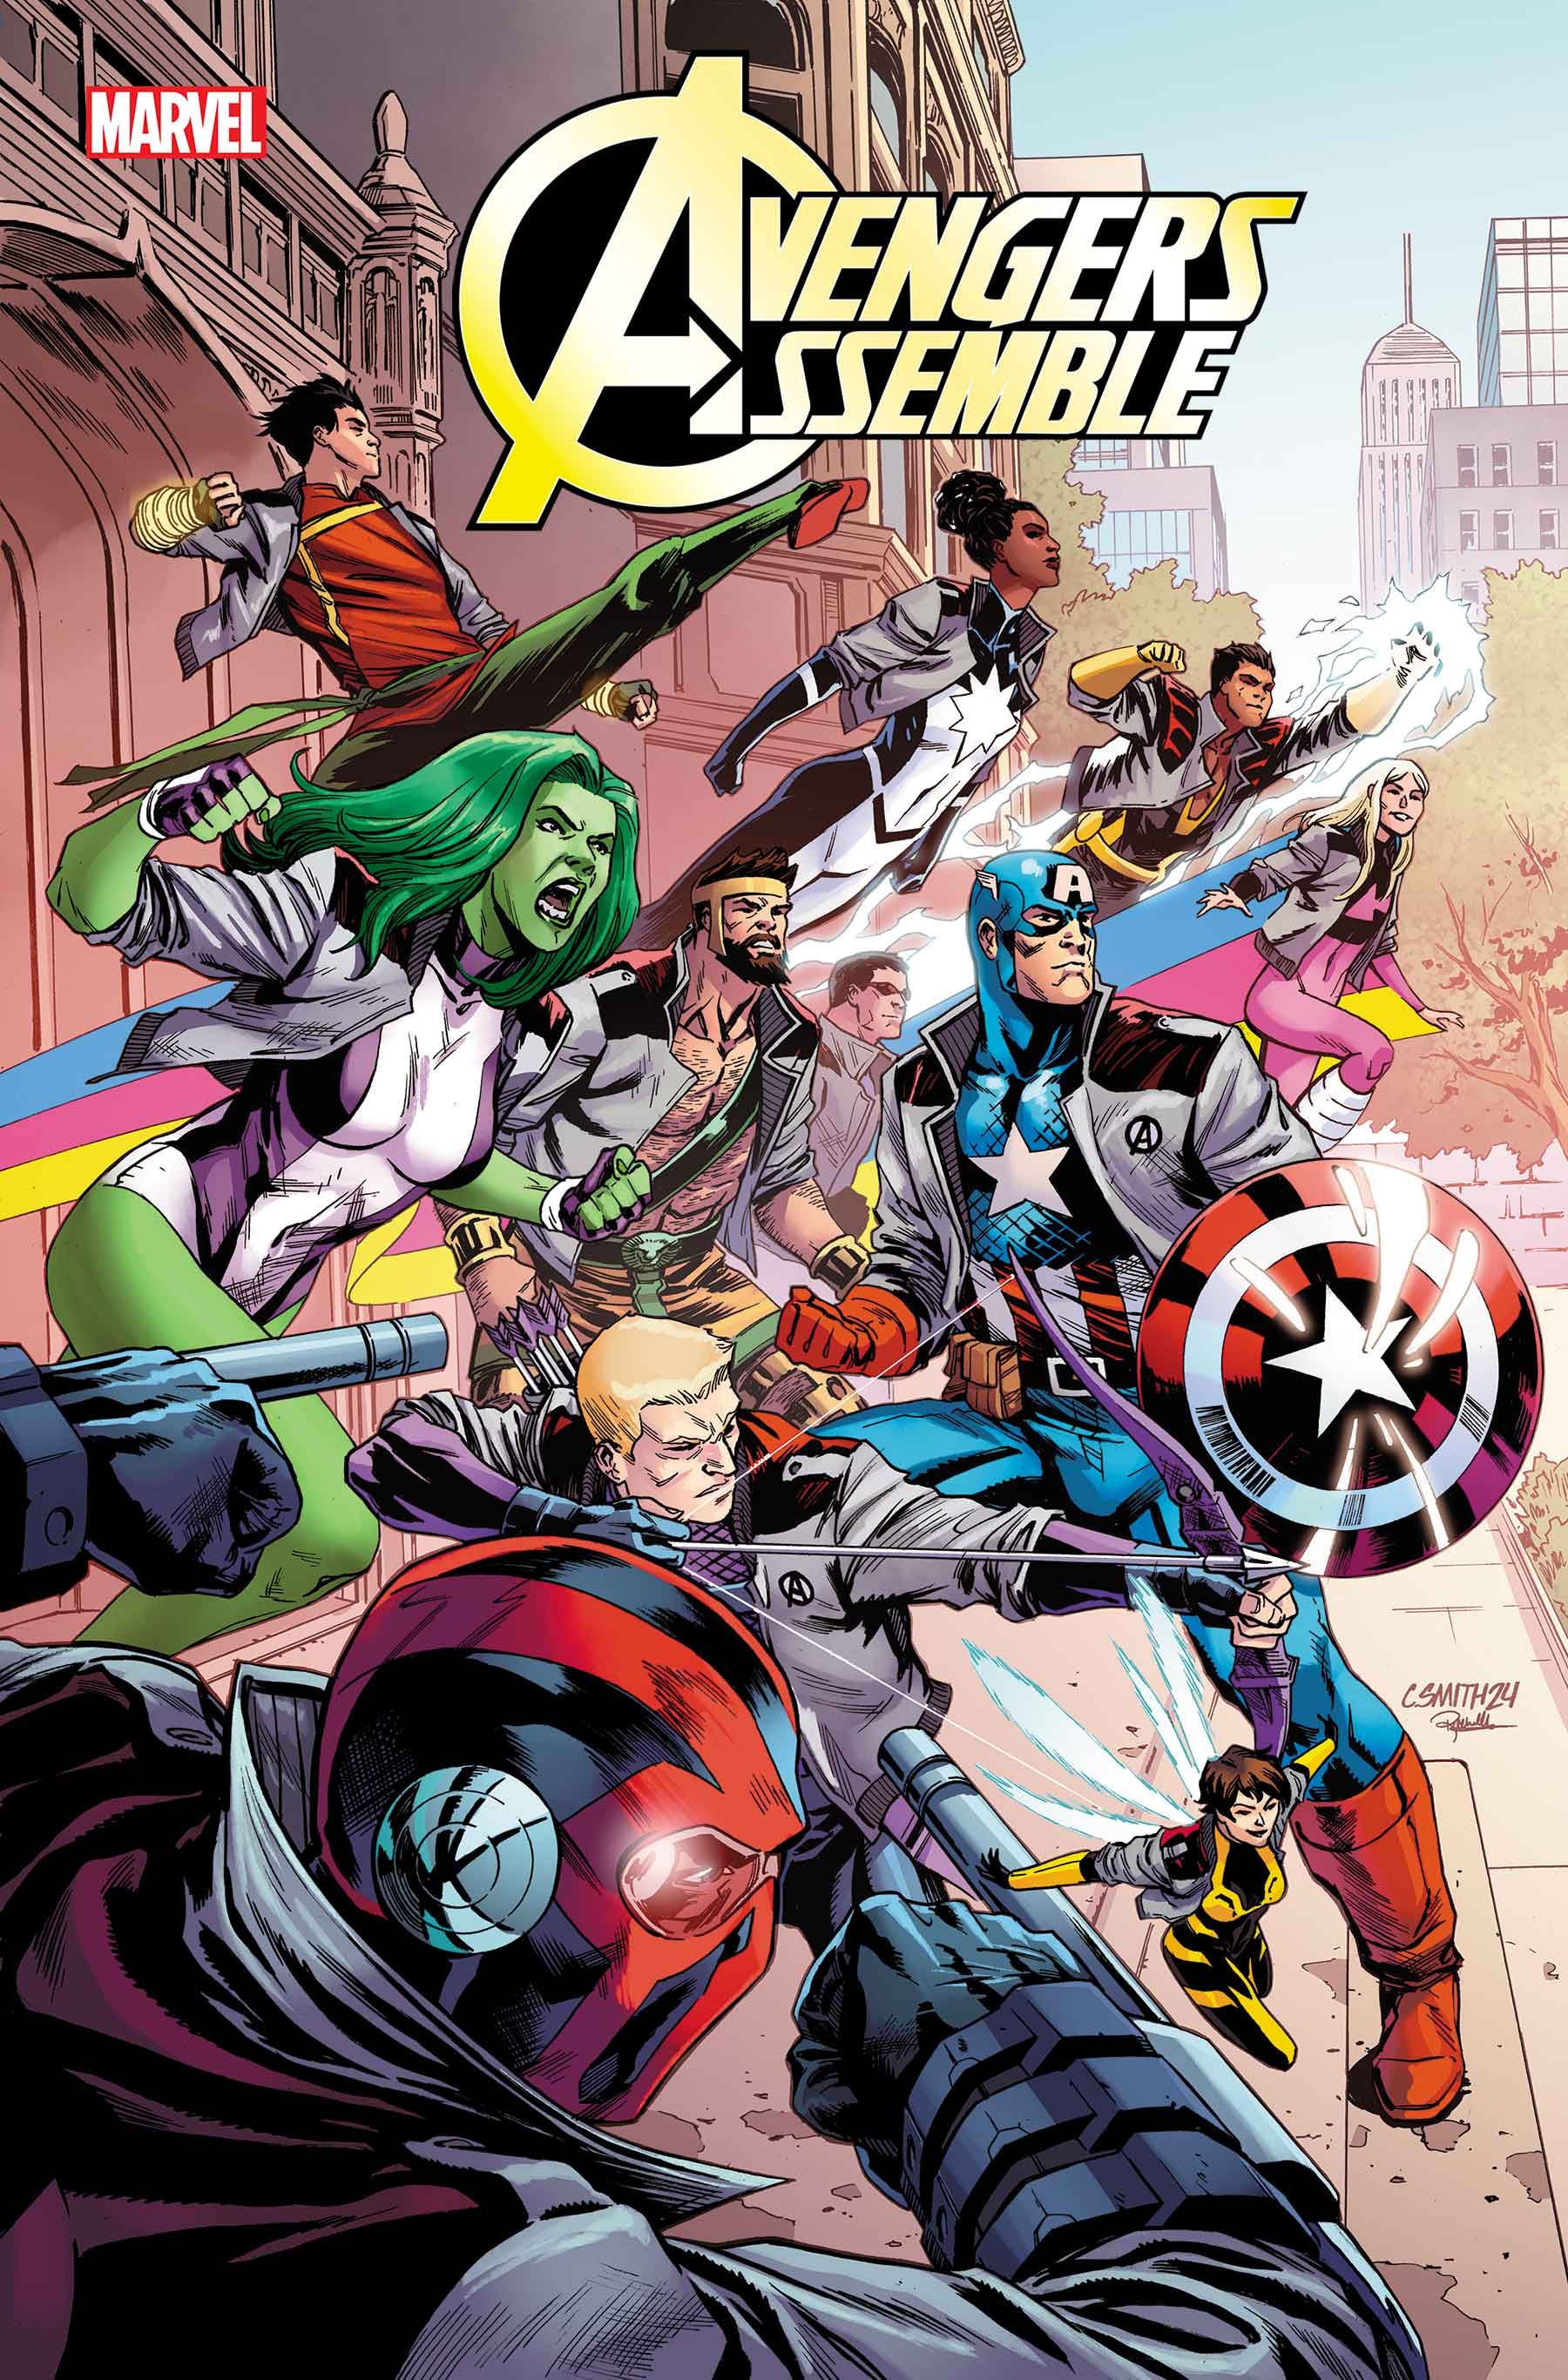 Капитан Америка формирует новую команду Мстителей